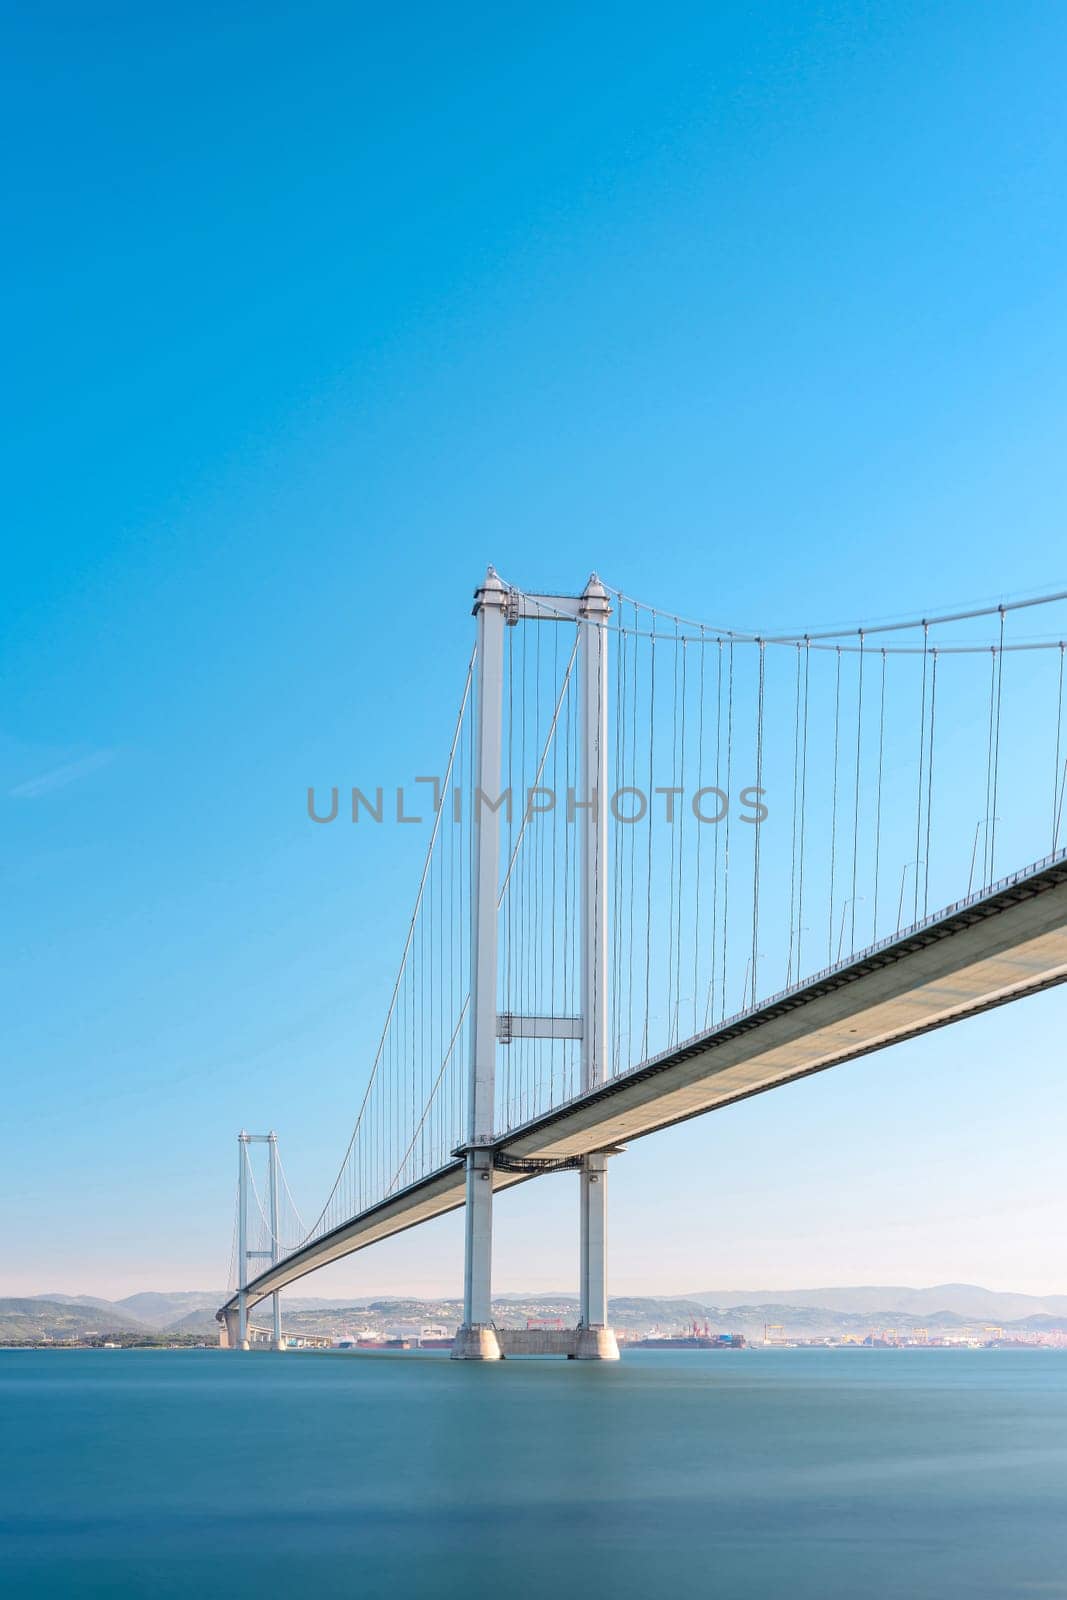 Osmangazi Bridge (Izmit Bay Bridge) located in Izmit, Kocaeli, Turkey. Suspension bridge captured with long exposure technique